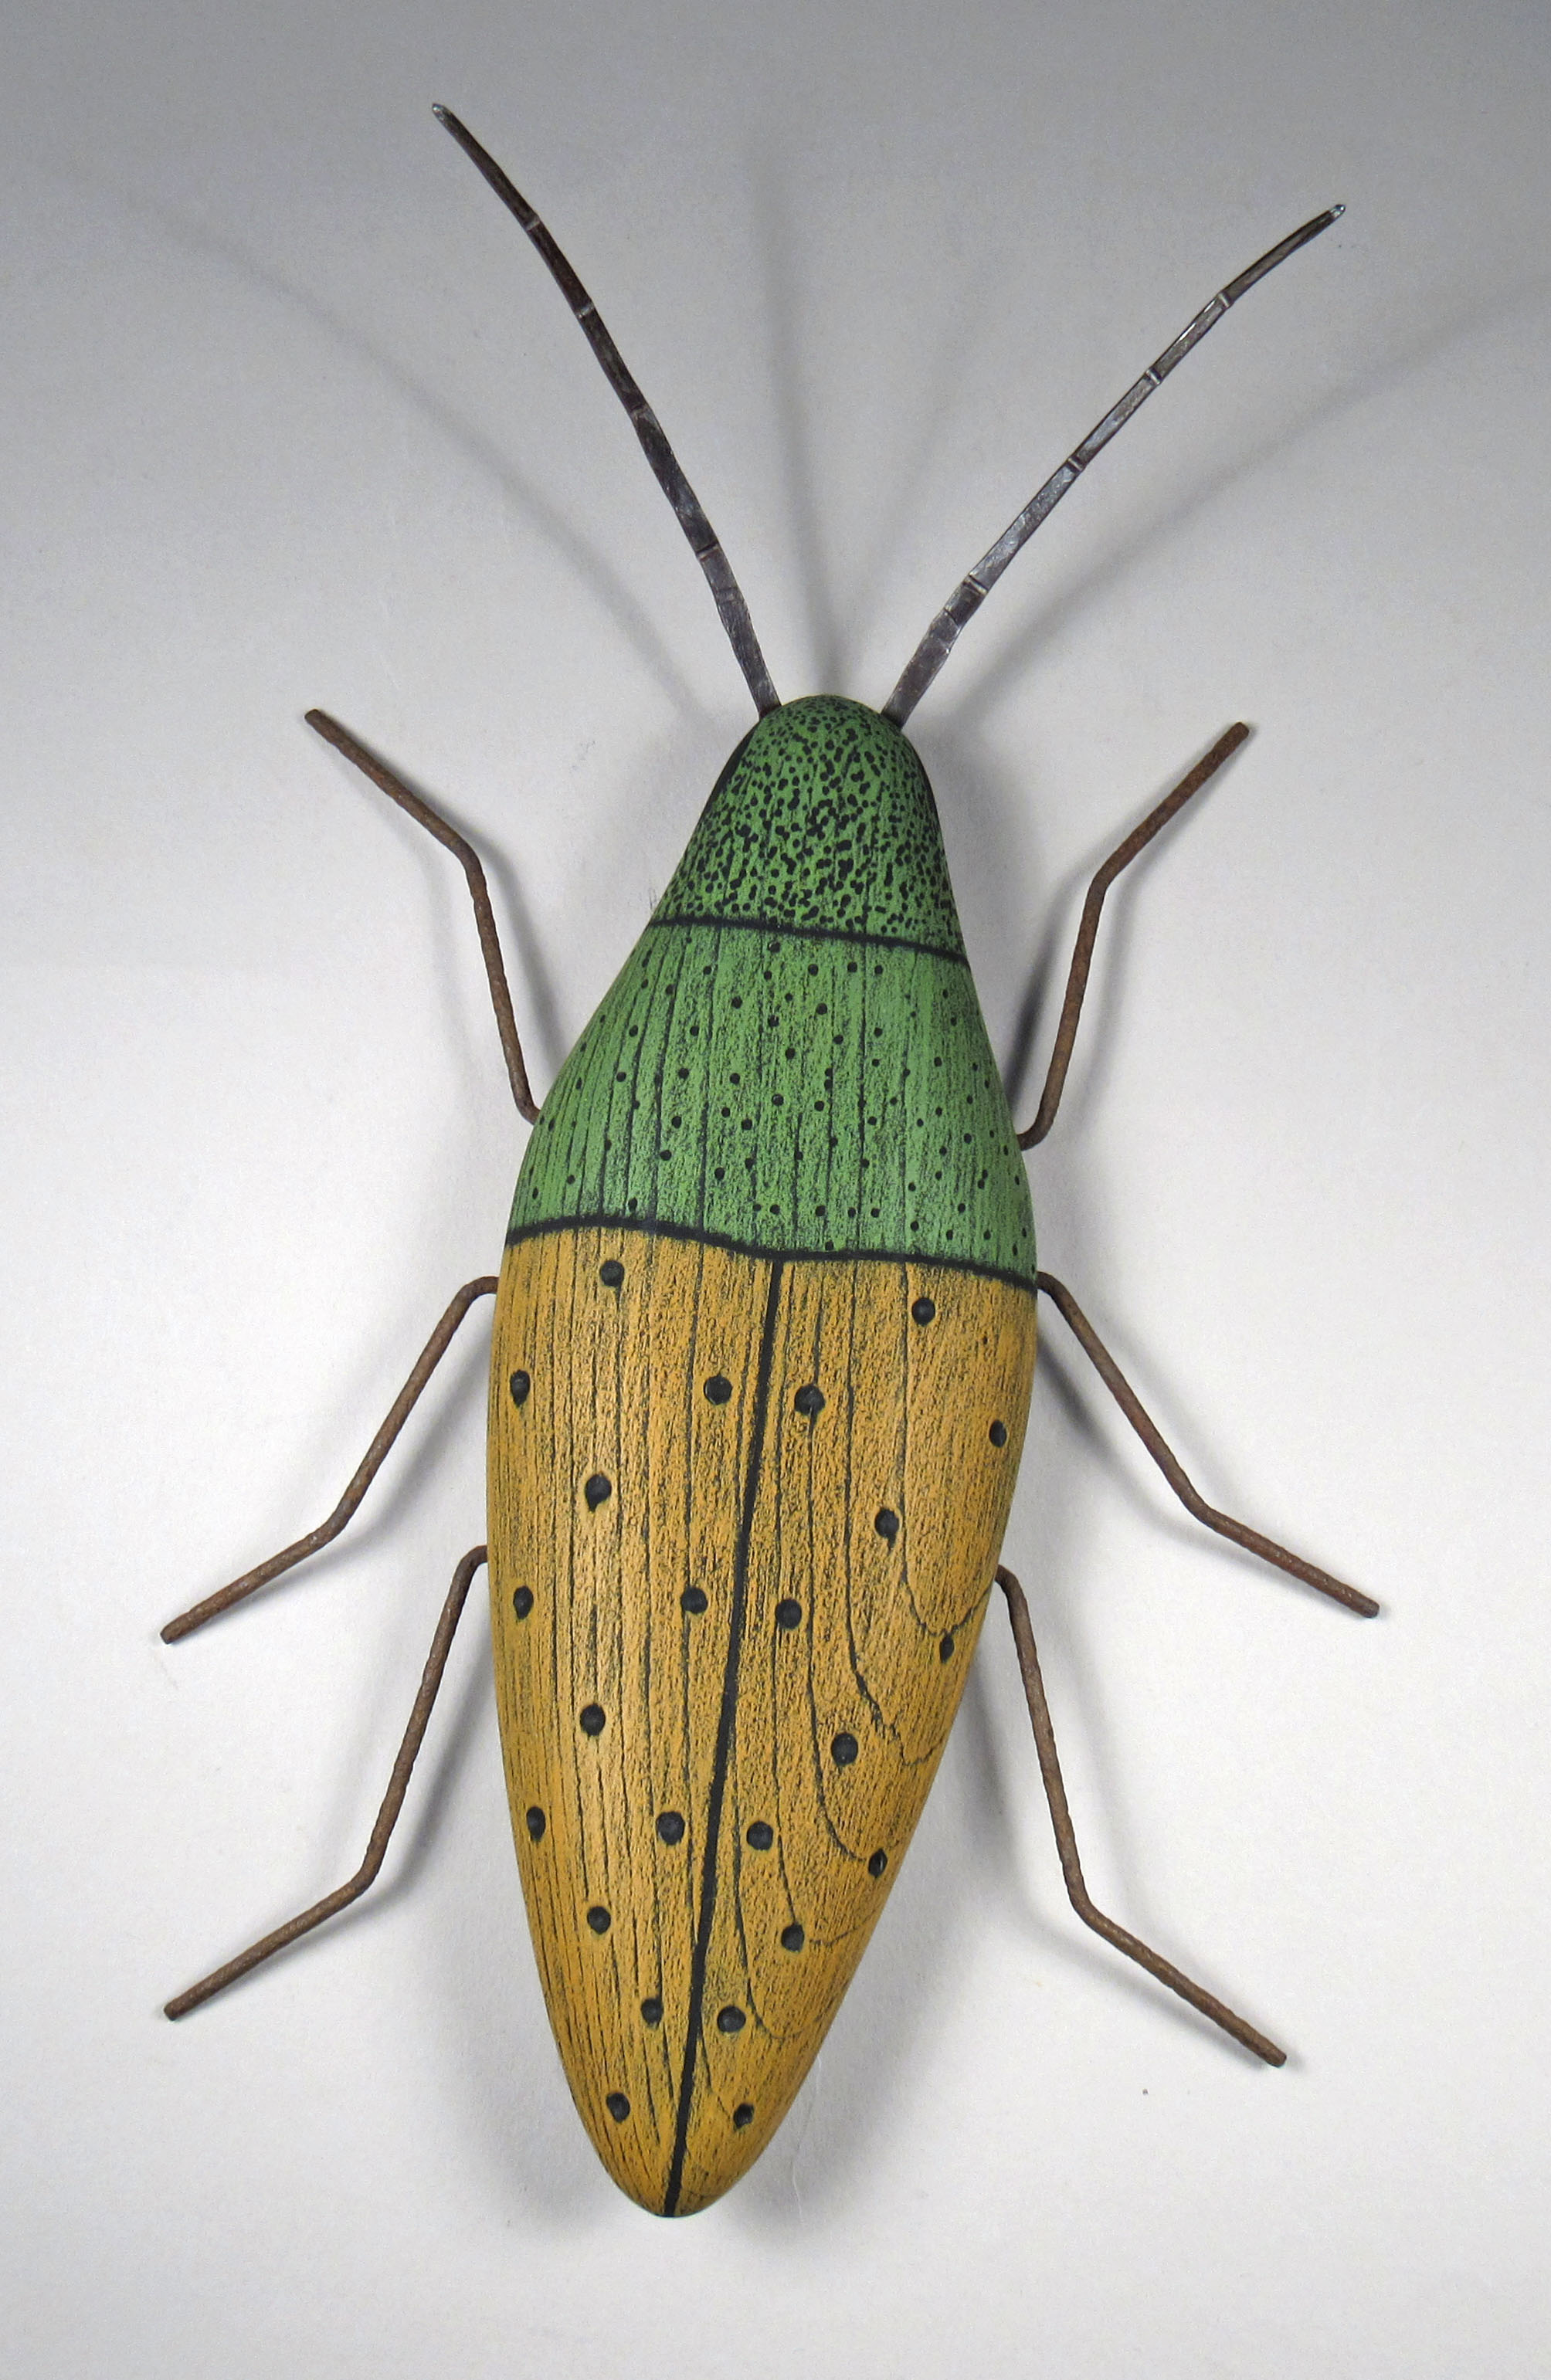 Beetle Sculpture by Paul Sumner